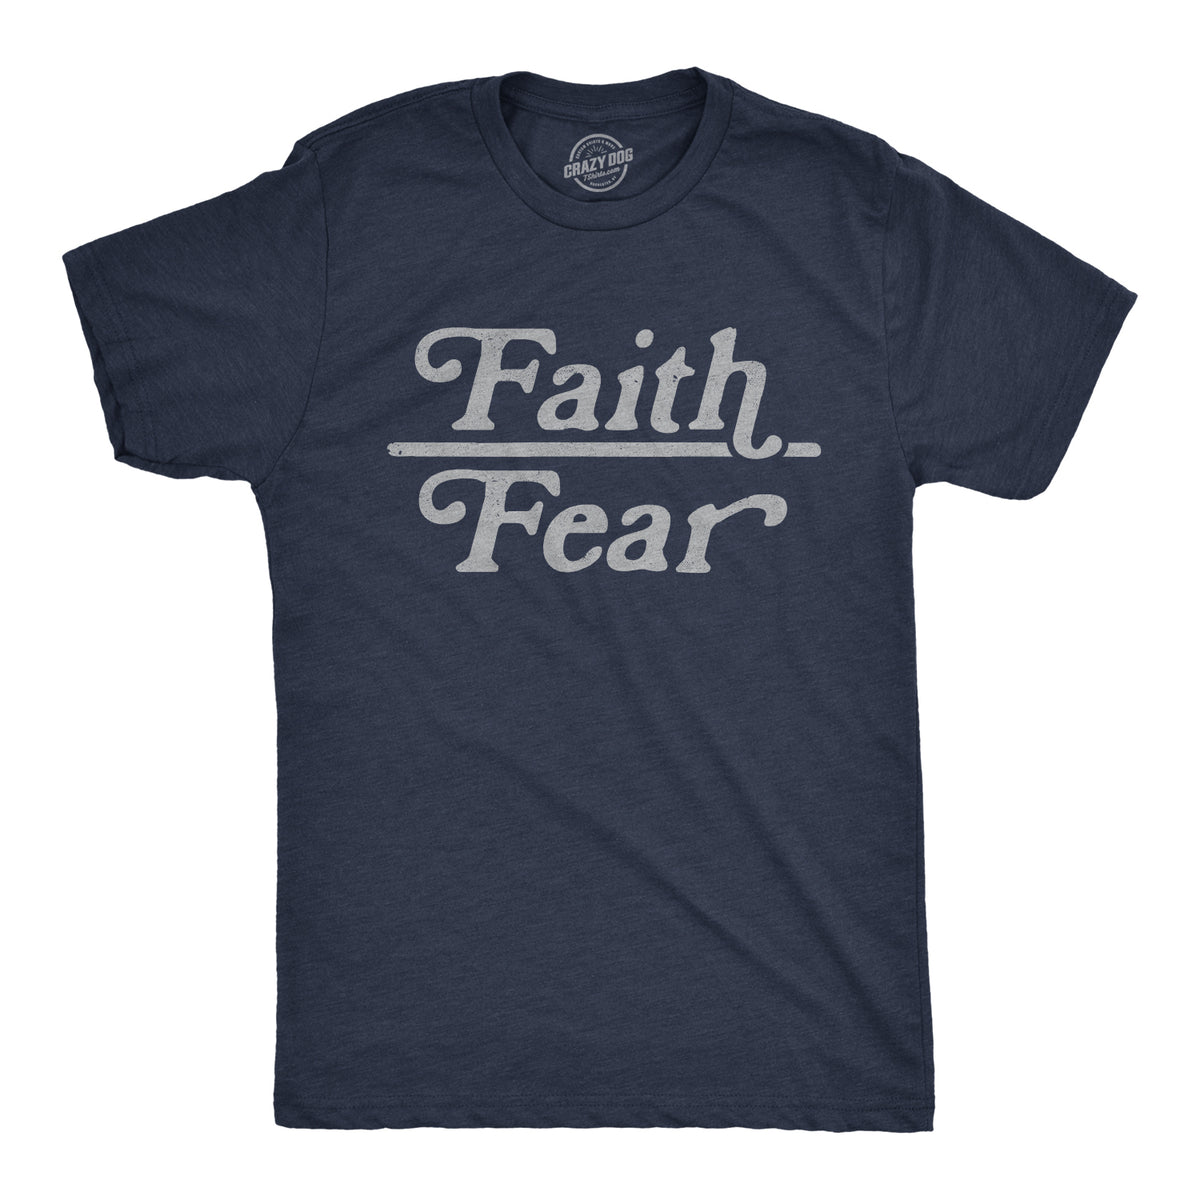 Funny Heather Navy - Faith Over Fear Faith Over Fear Mens T Shirt Nerdy Motivational Religion Tee